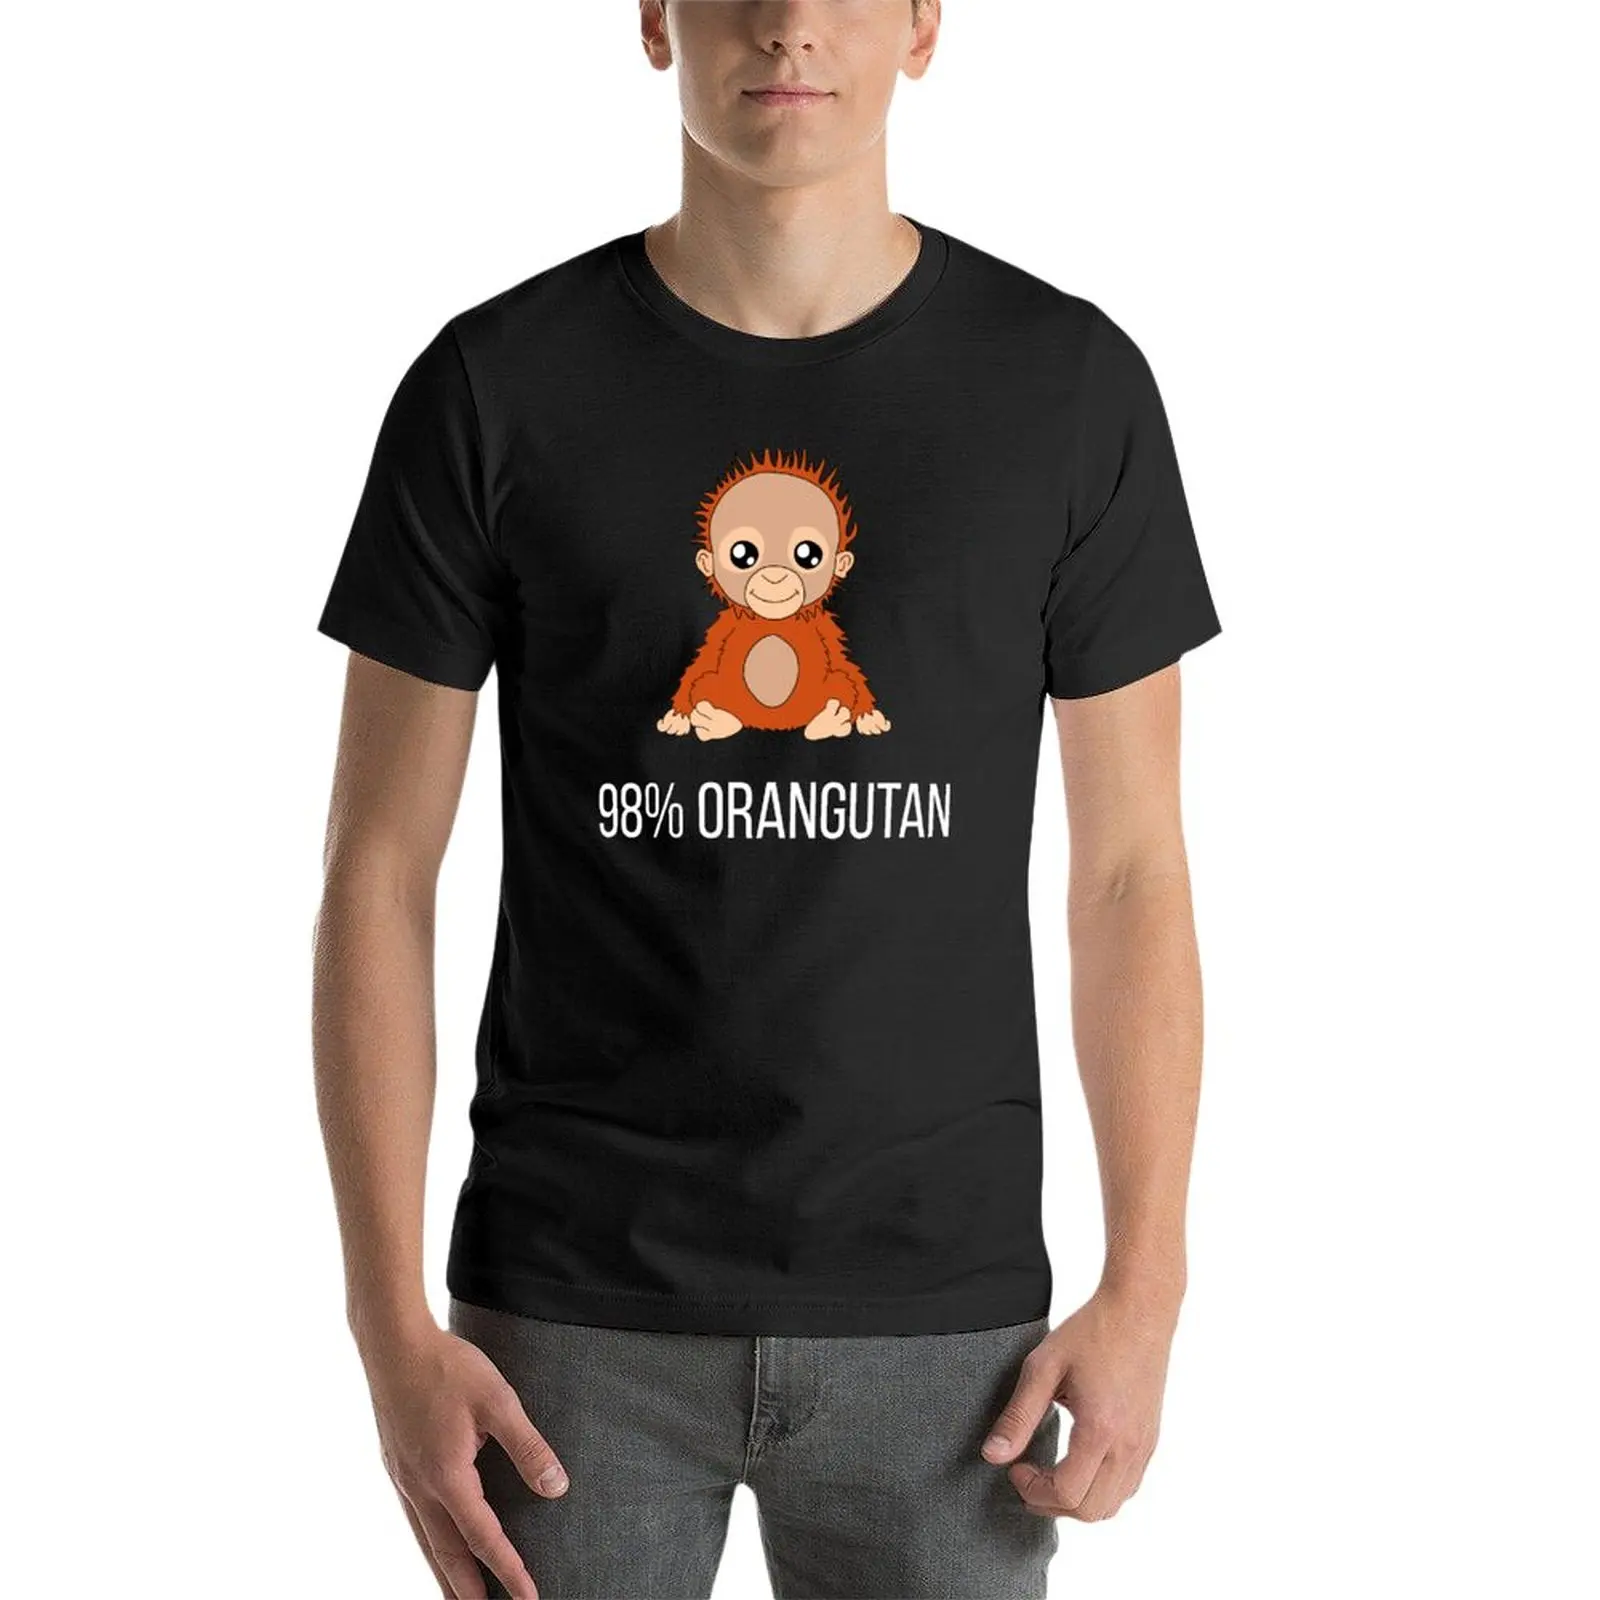 98% футболка с орангутаном футболки, графические футболки, винтажная мужская одежда